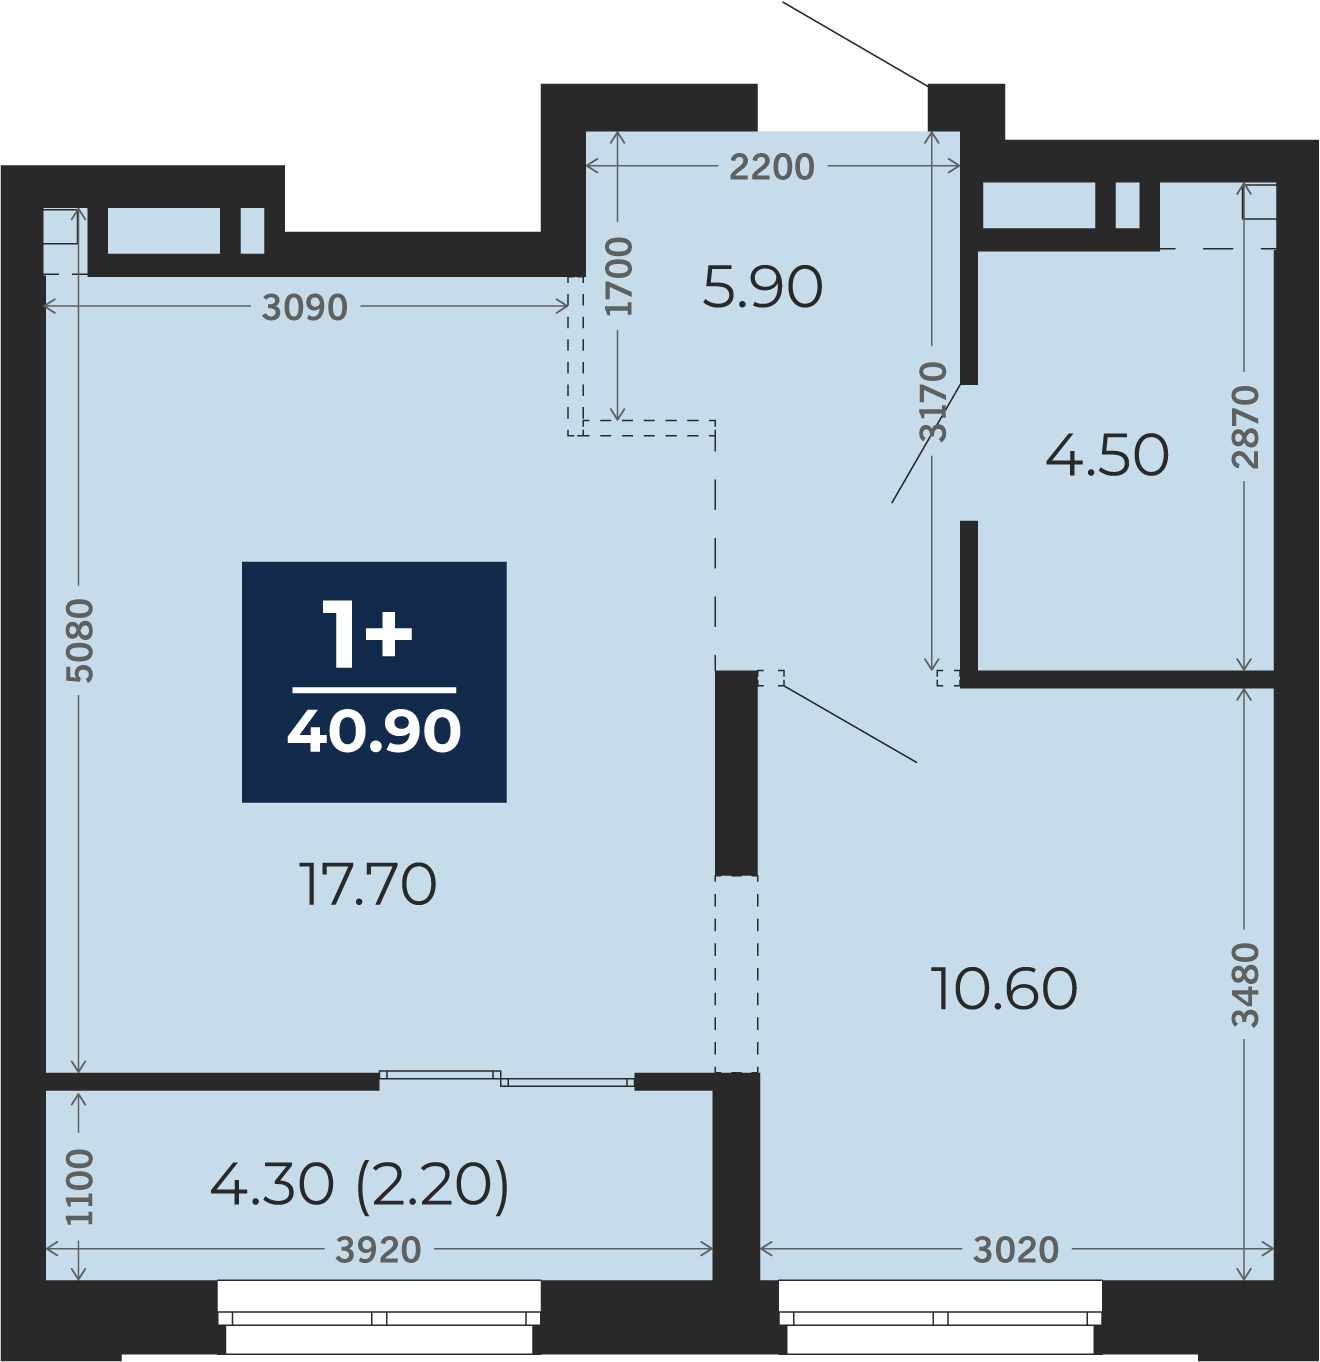 Квартира № 414, 1-комнатная, 40.9 кв. м, 13 этаж